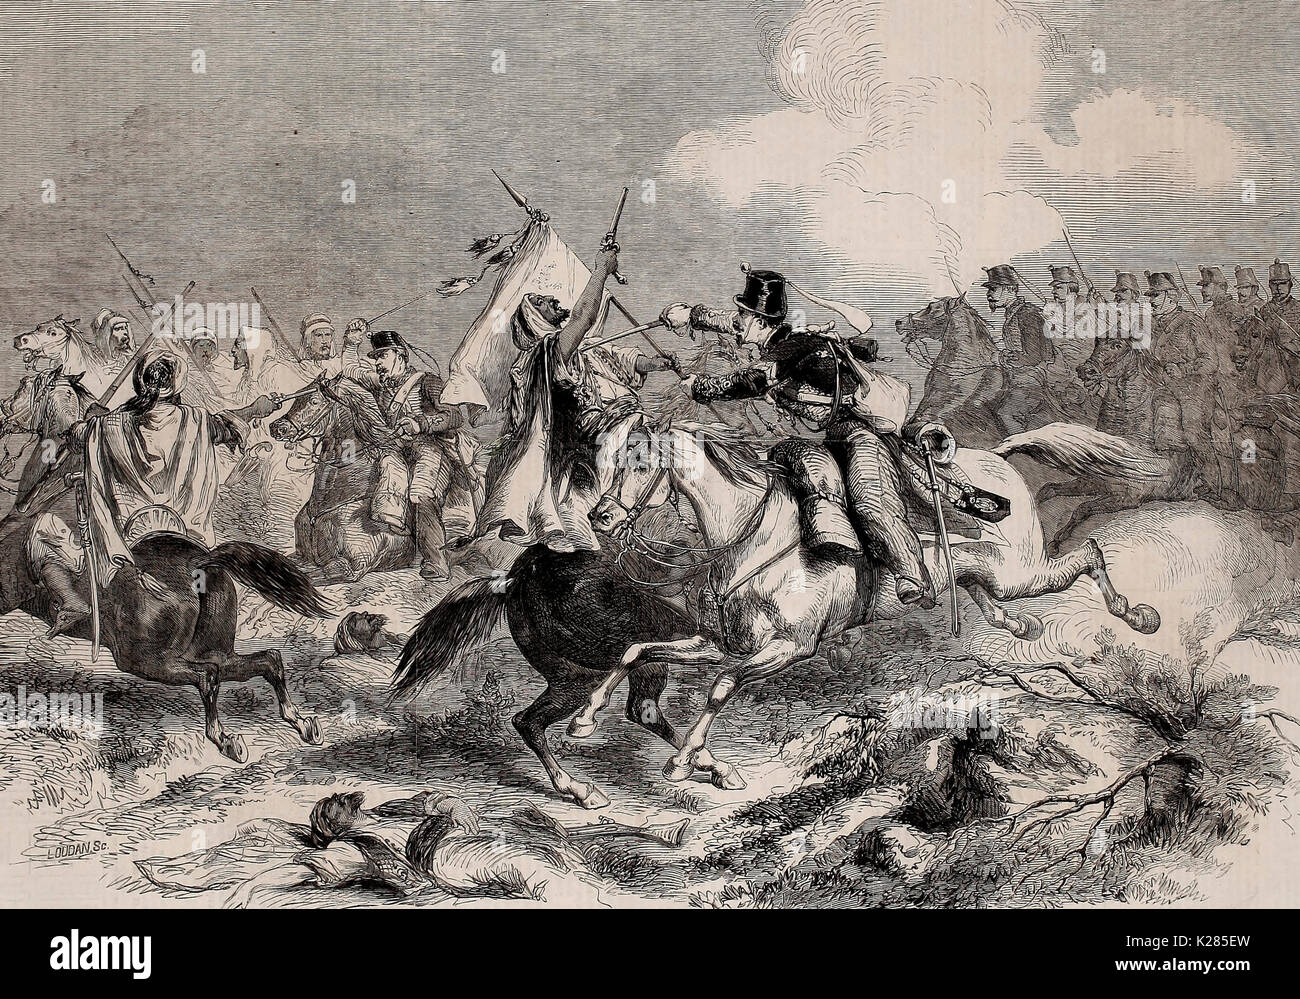 Krieg in Marokko - Konflikt zwischen maurischen und spanischen Kavallerie am 1. Januar 1860 Stockfoto